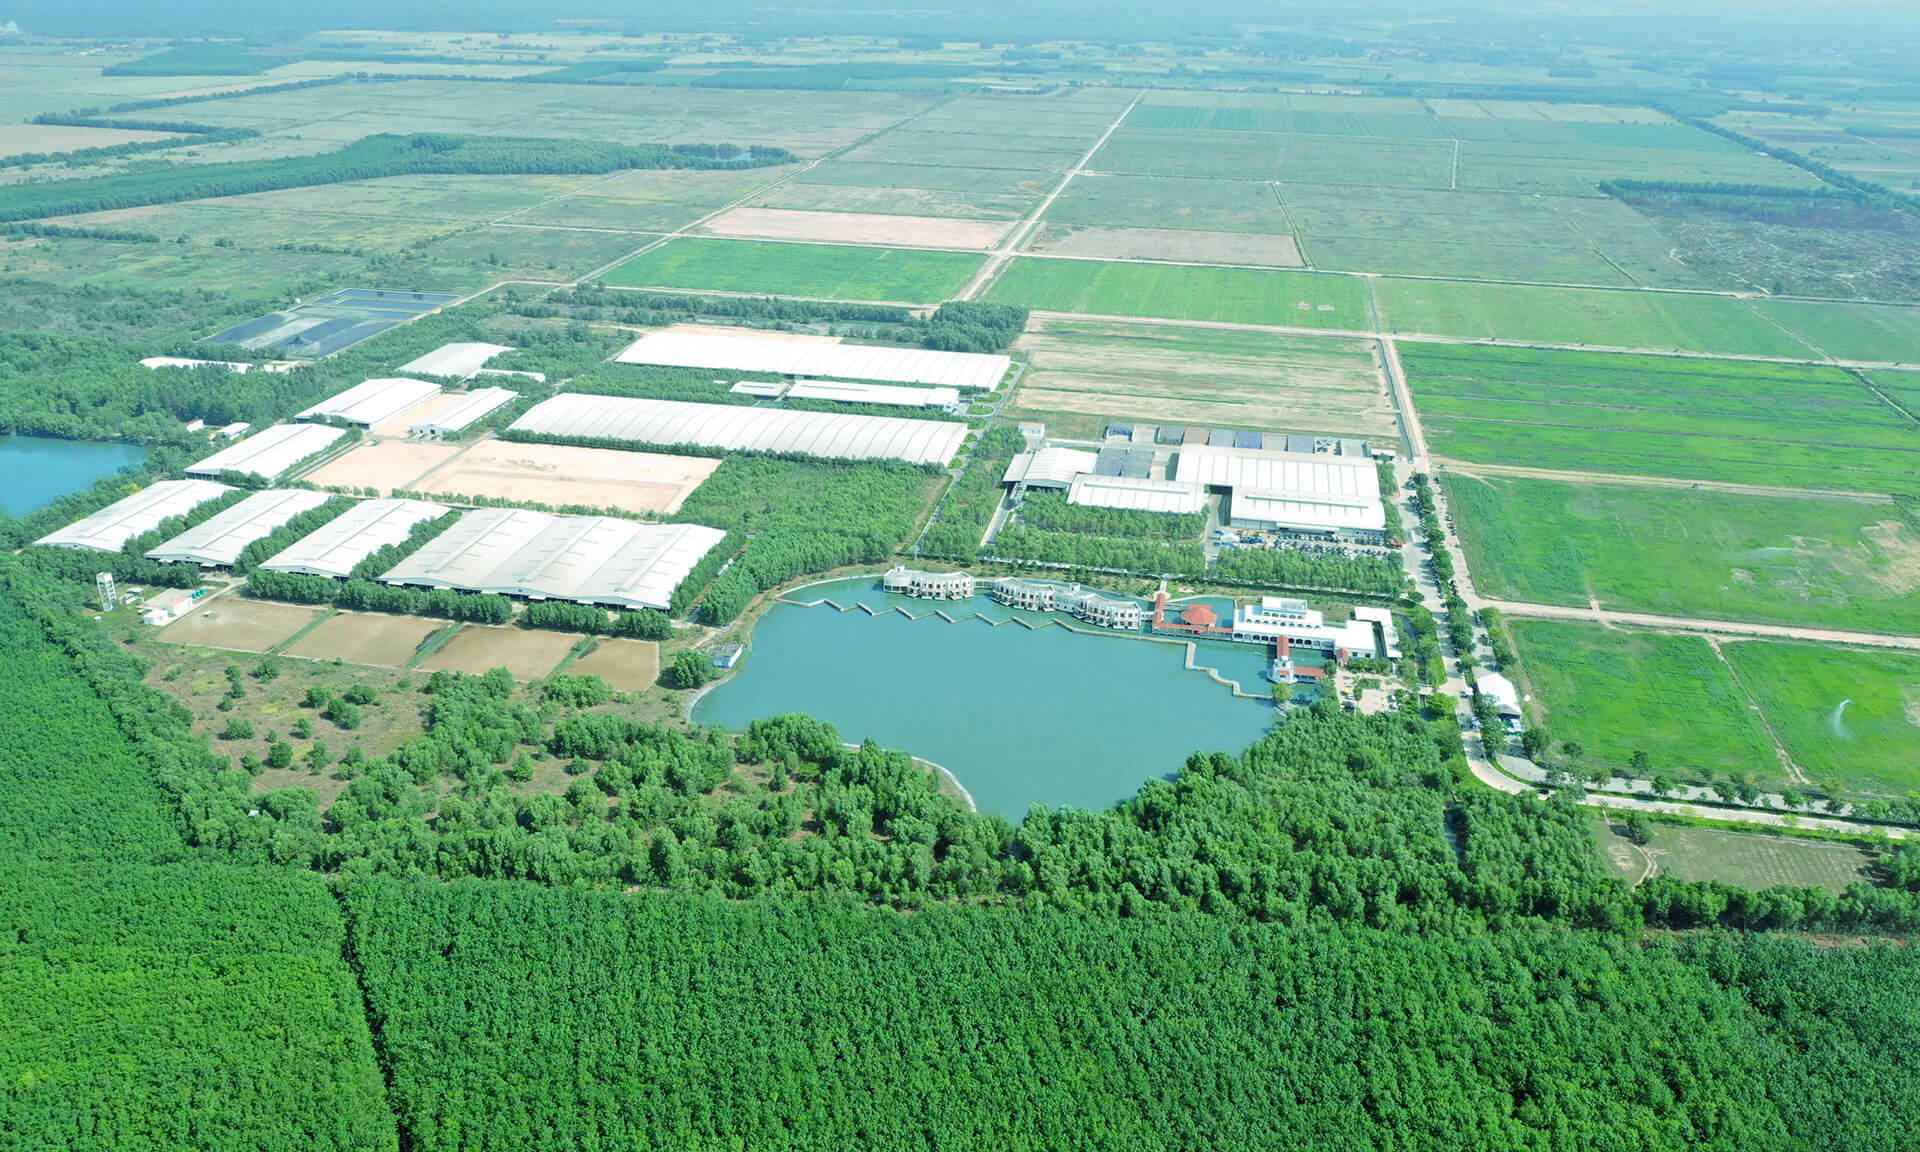 Toàn cảnh Trang trại sinh thái Vinamilk Green Farm Tây Ninh với 9 hồ nước điều hoà khí hậu, làm mát cho cả khu vực, tạo ra không gian mát mẻ ngay cả trong mùa nắng nóng cao điểm